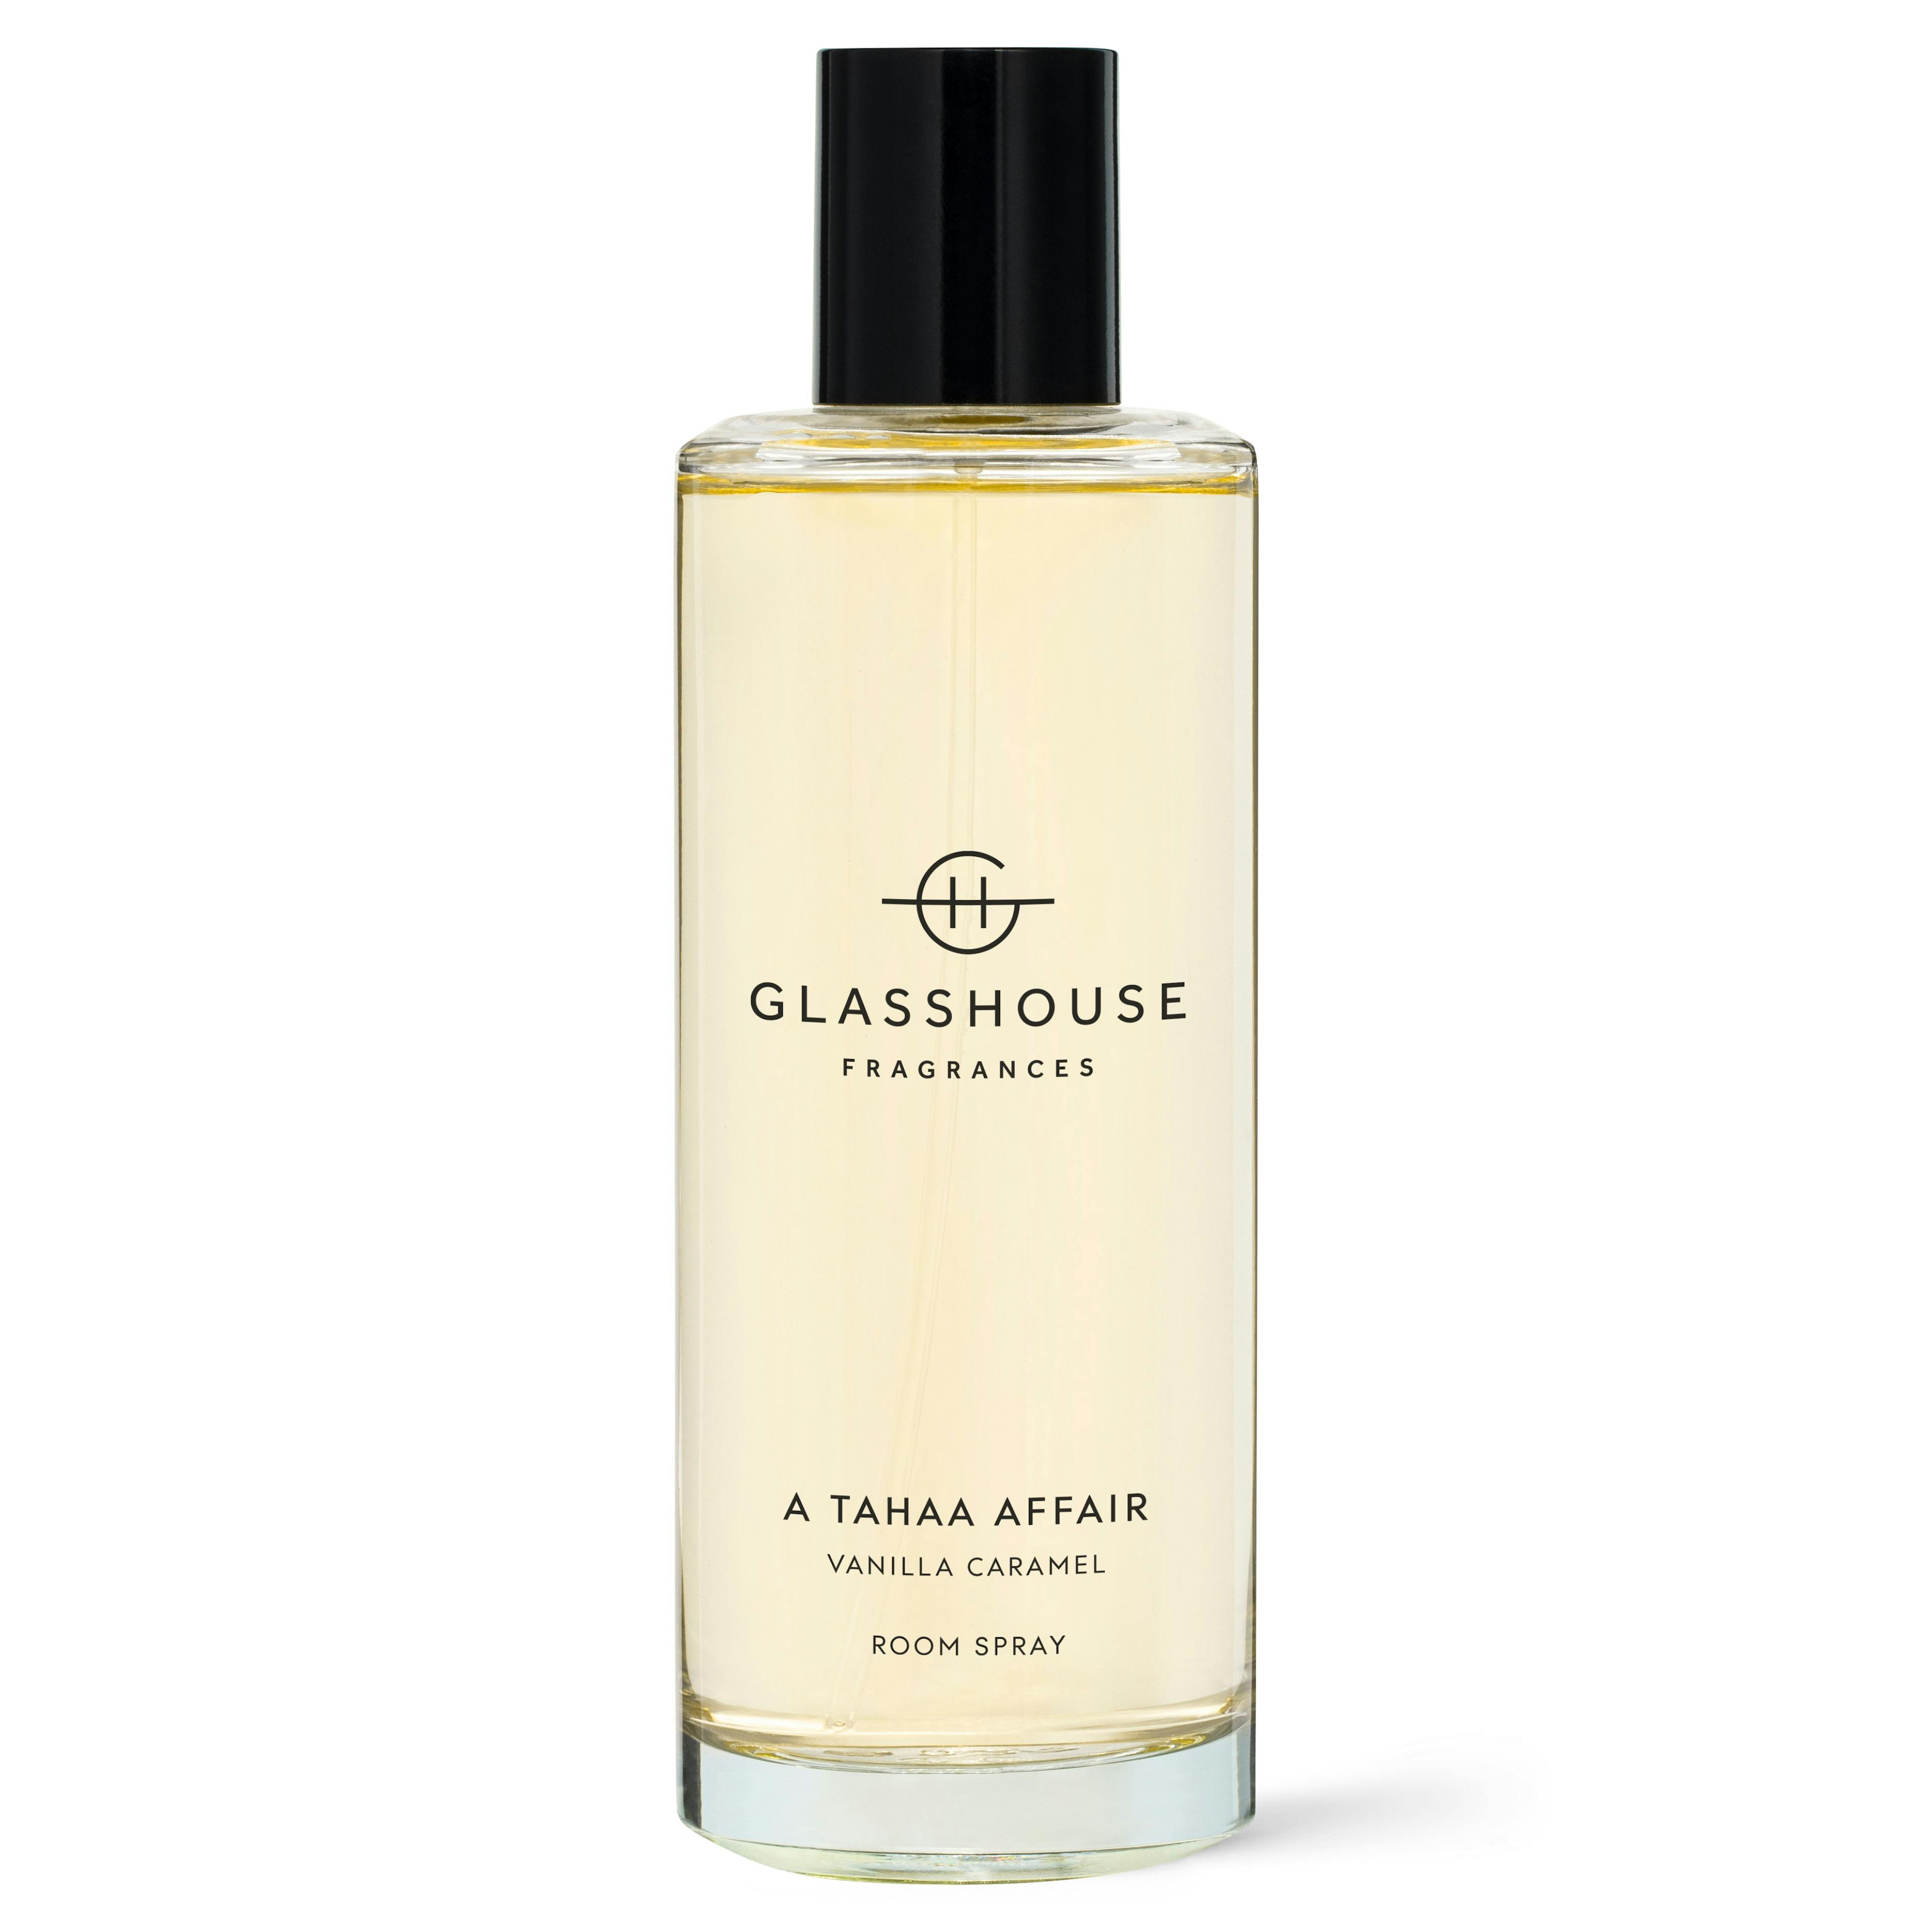 Glasshouse Fragrances Interior Fragrance 150ml - A TAHAA AFFAIR